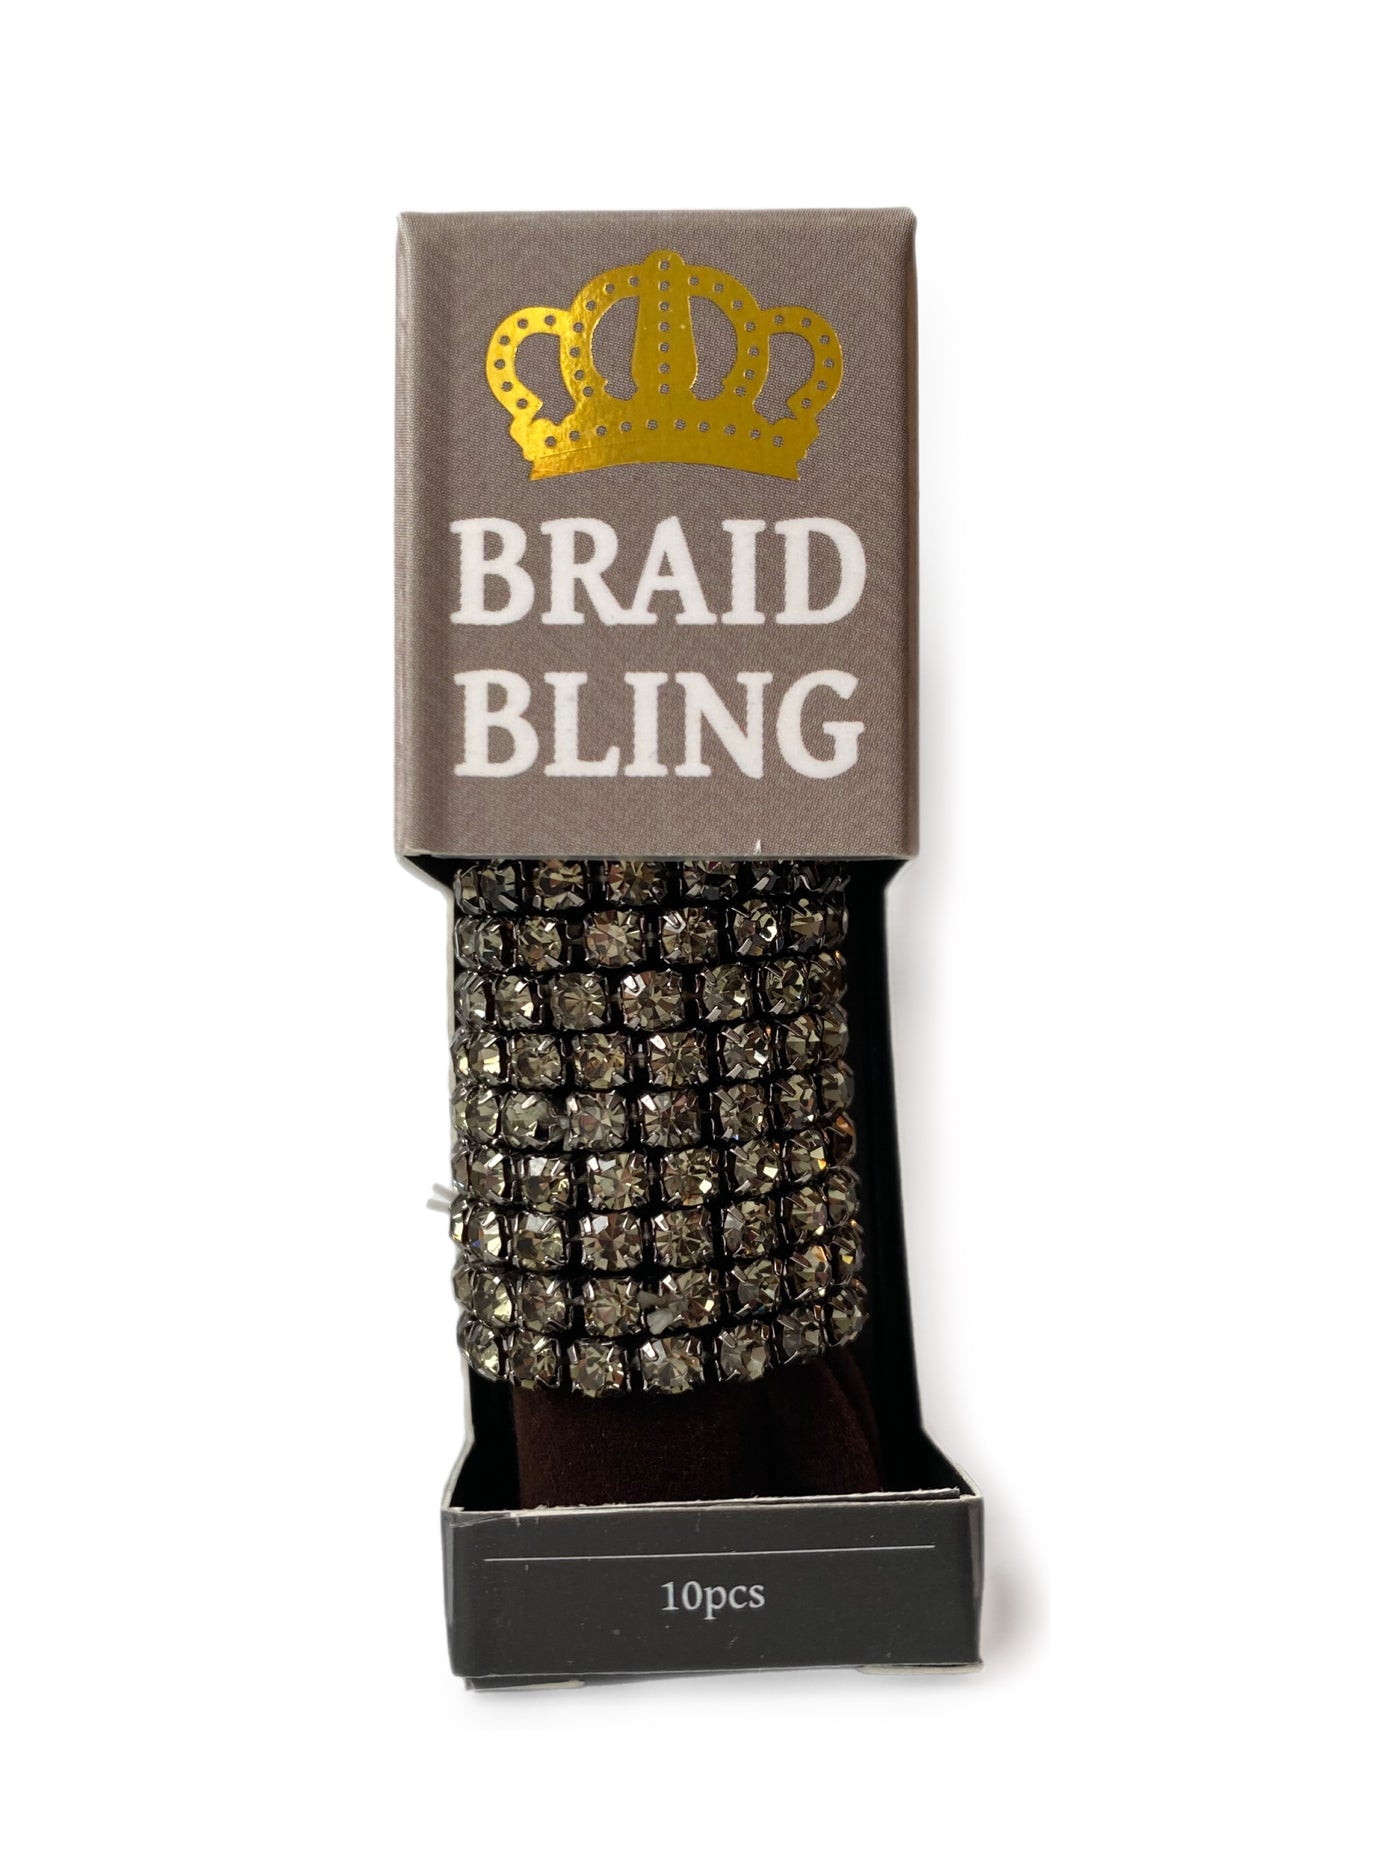 Braid Blings